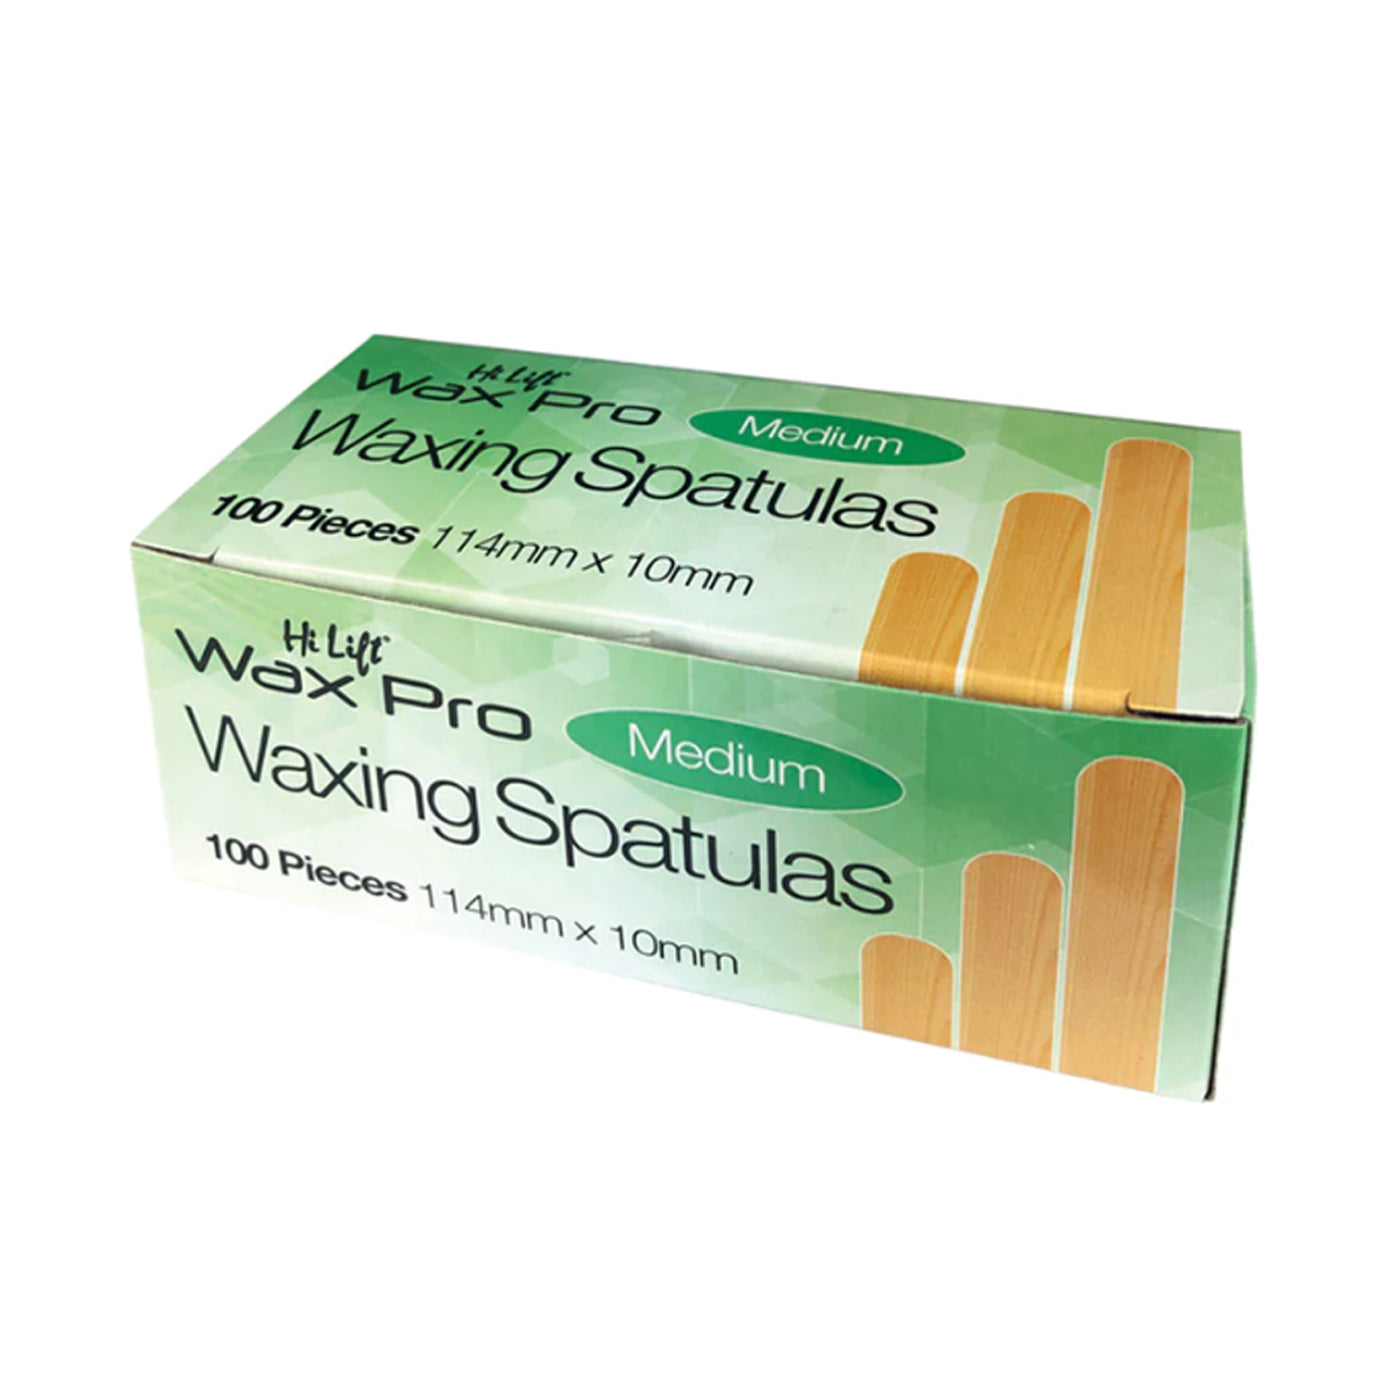 Hi Lift Wooden Waxing Spatulas - Medium 100 Pack